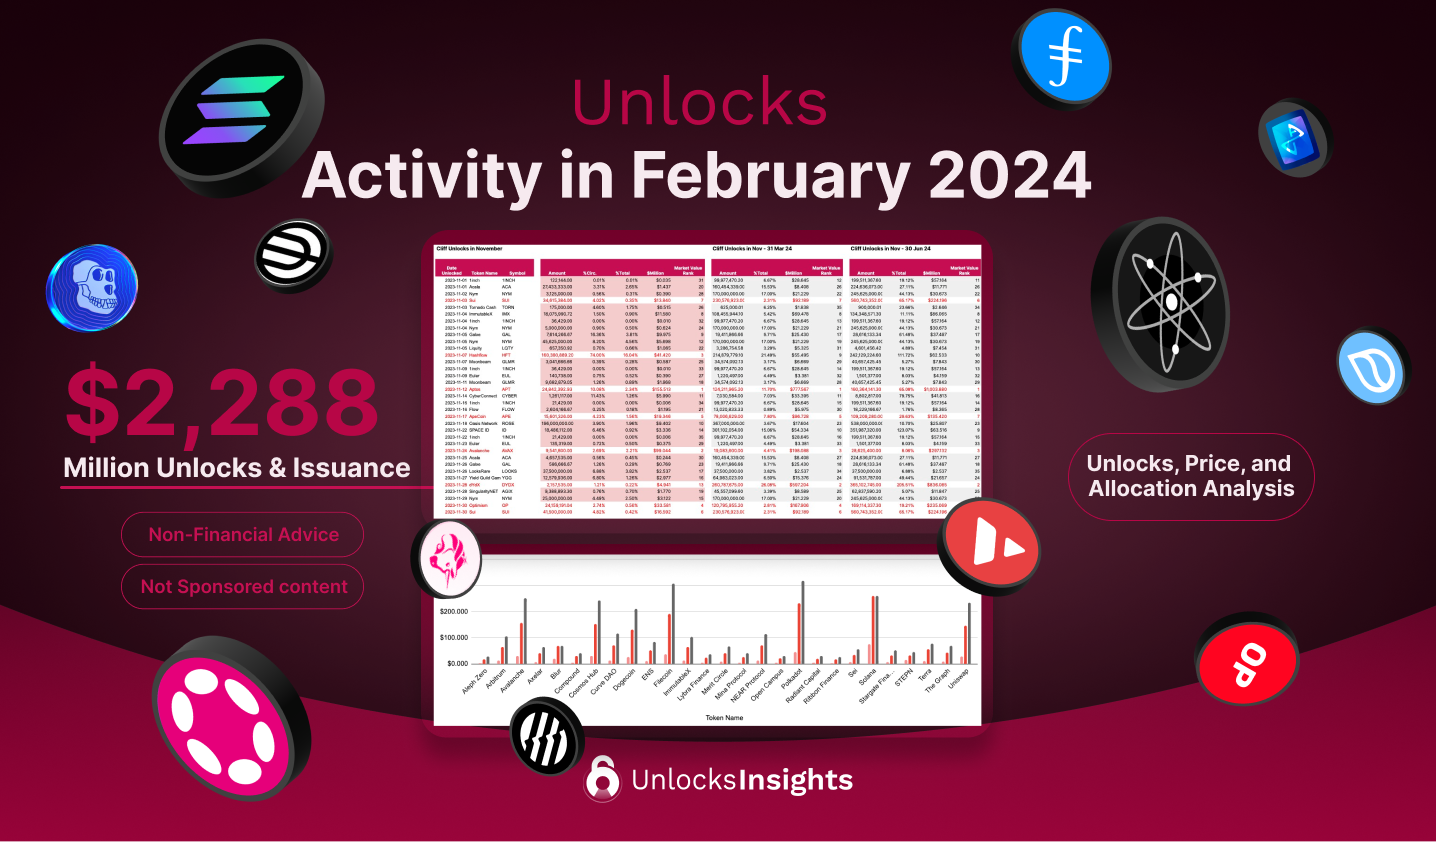 Unlocks Activity in February 2024